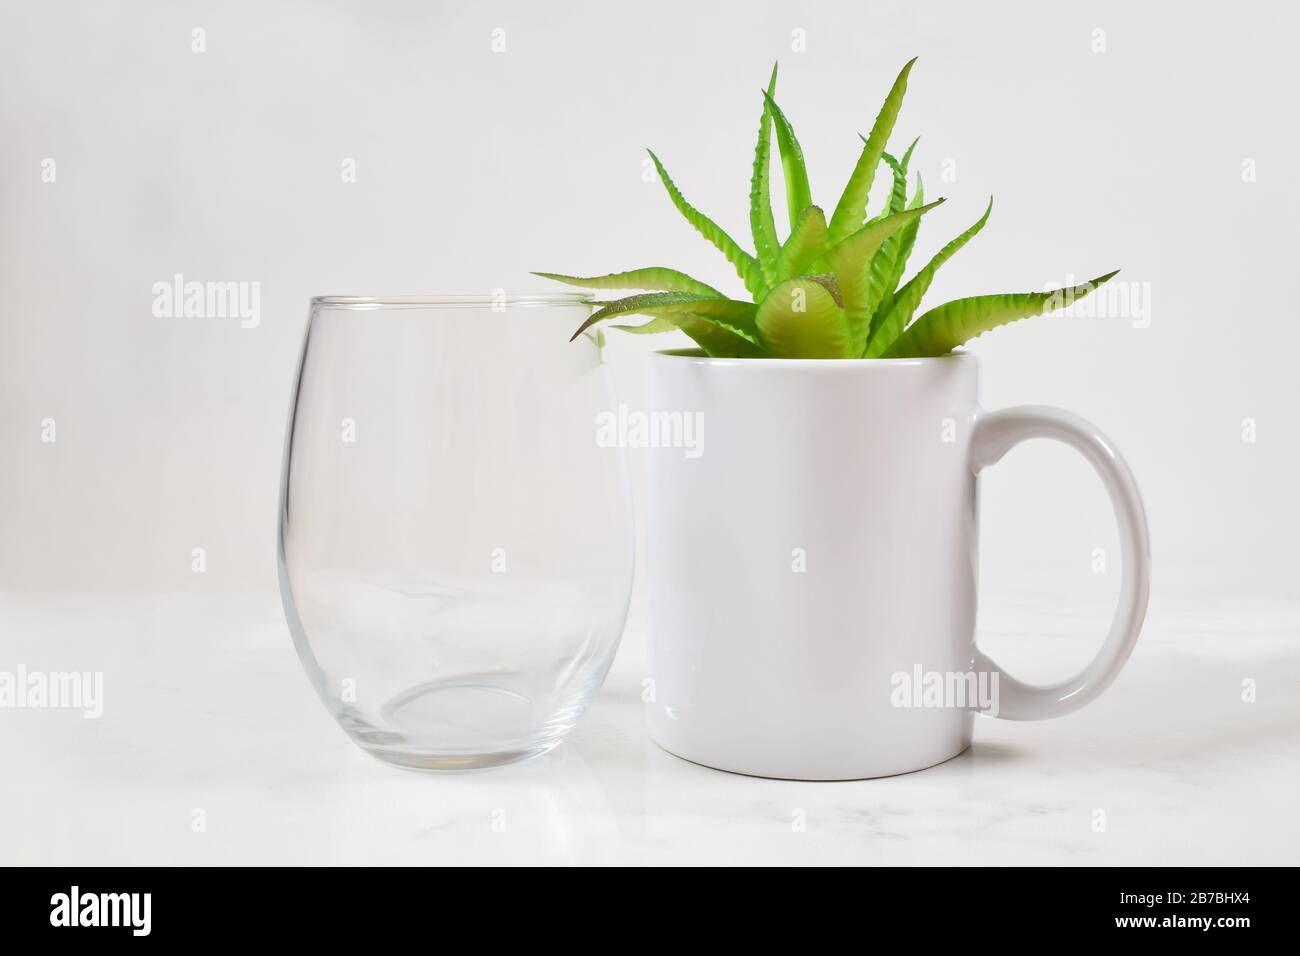 Dieses Tassen Mockup bietet ein stielloses Weinglas neben einer 11-Unze-Kaffeetasse. Im Becher ruht eine fröhliche grüne Aloe vera Pflanze. Stockfoto